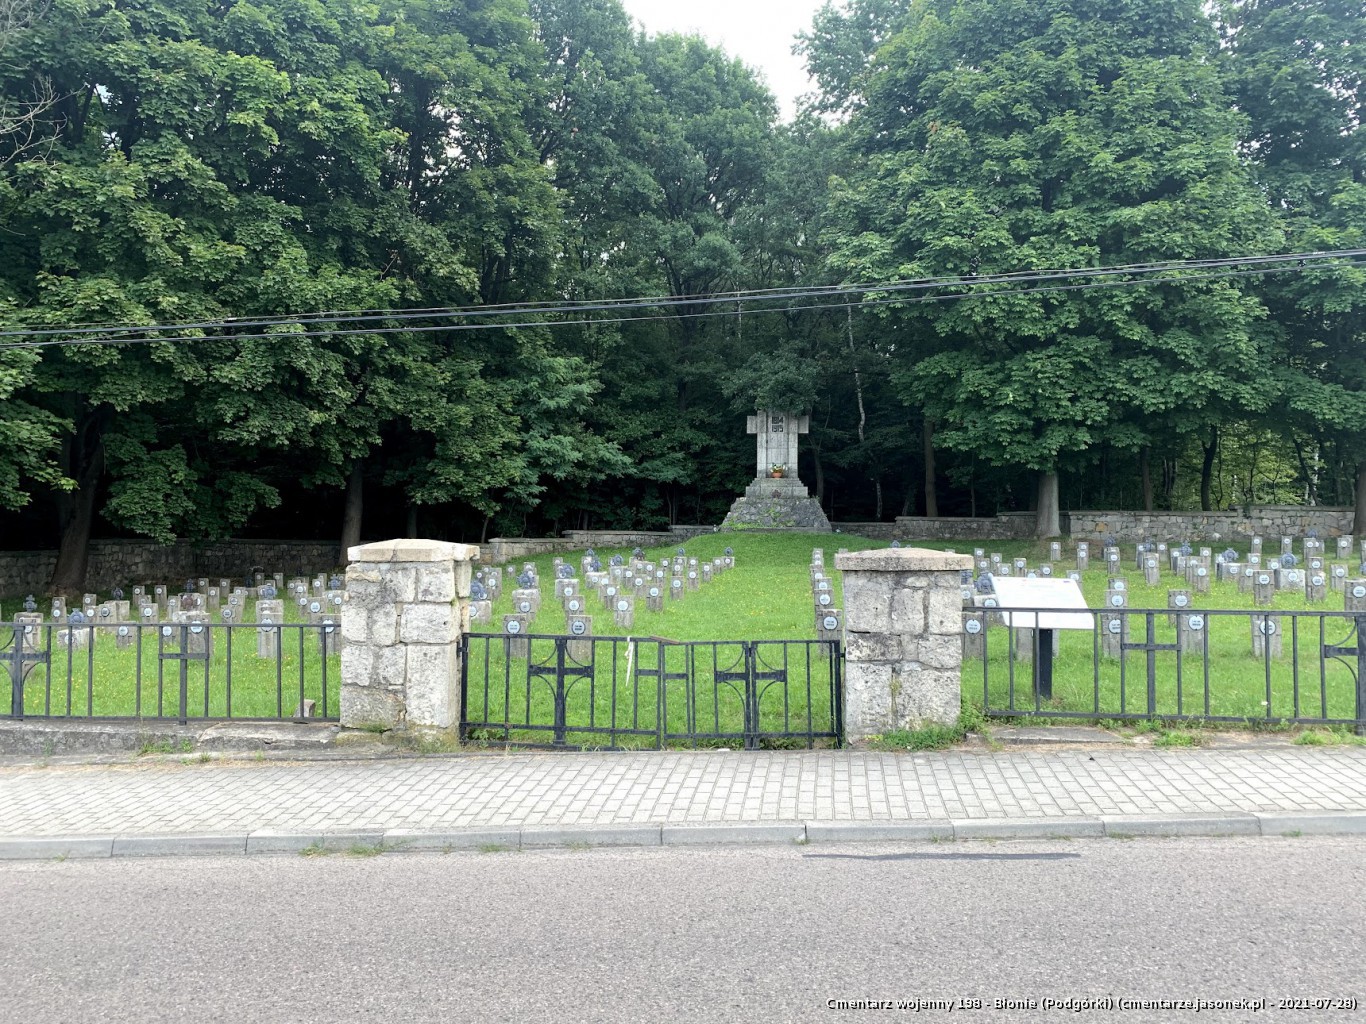 Cmentarz wojenny 198 - Błonie (Podgórki)